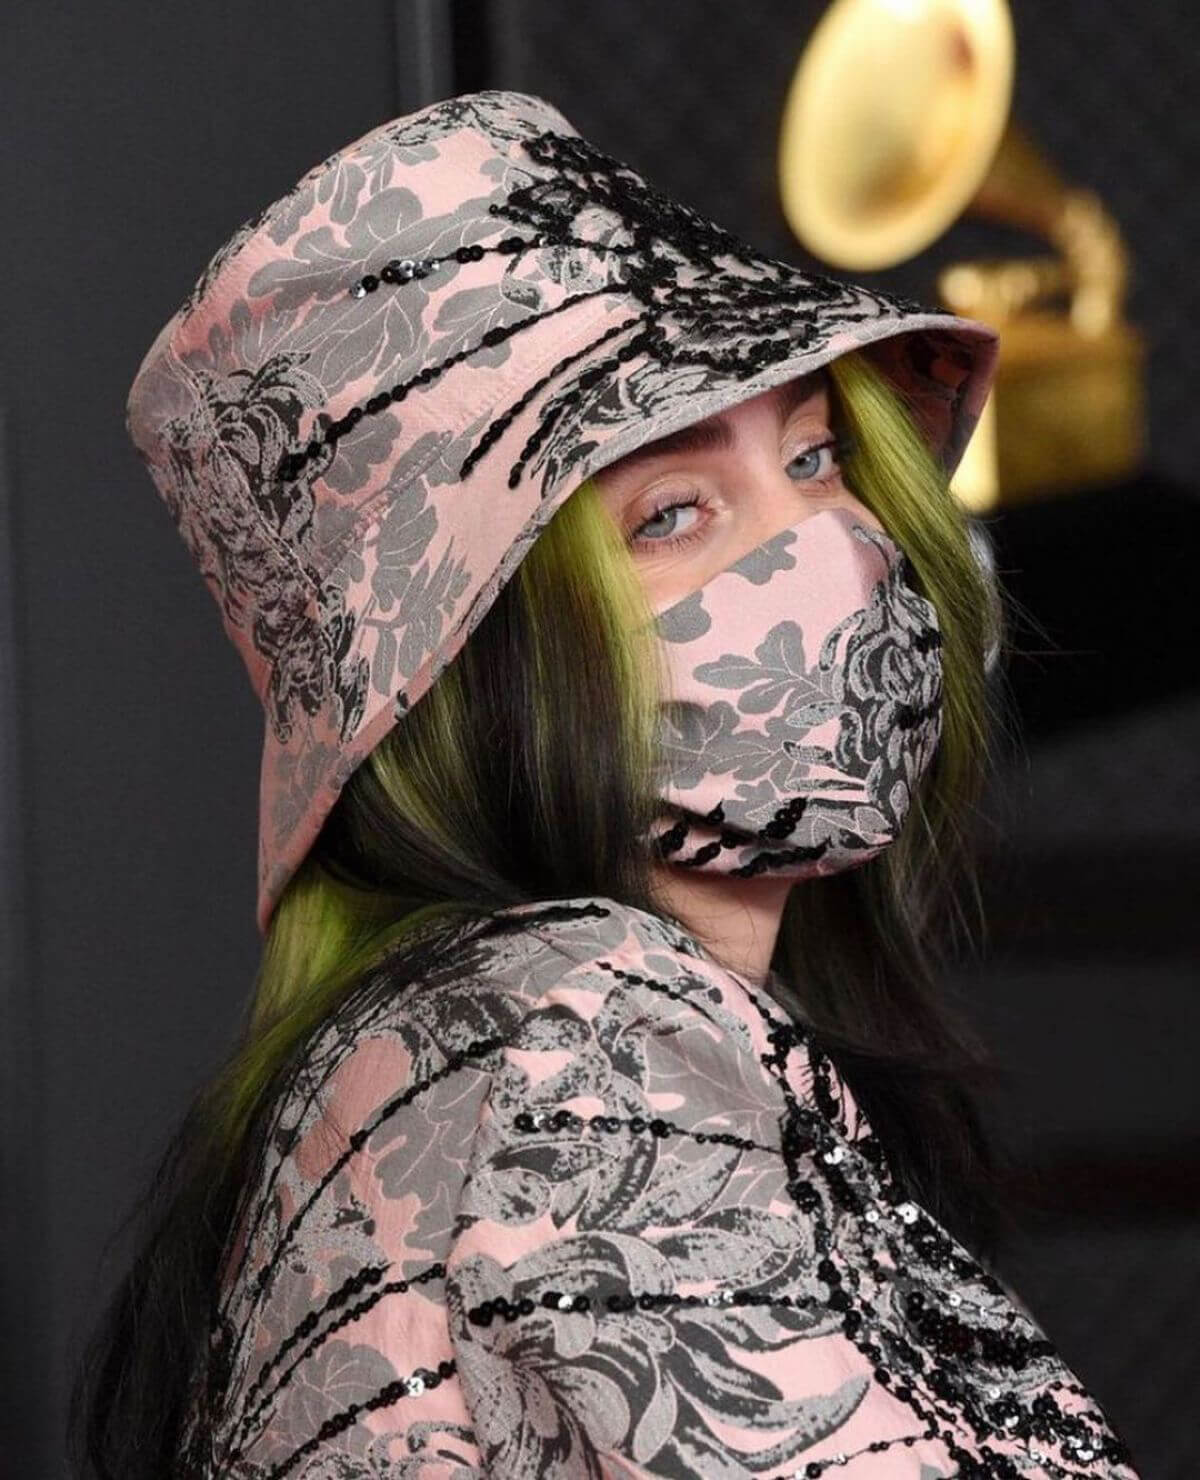 Billie Eilish attends 2021 Grammy Awards in Los Angeles 03/14/2021 1